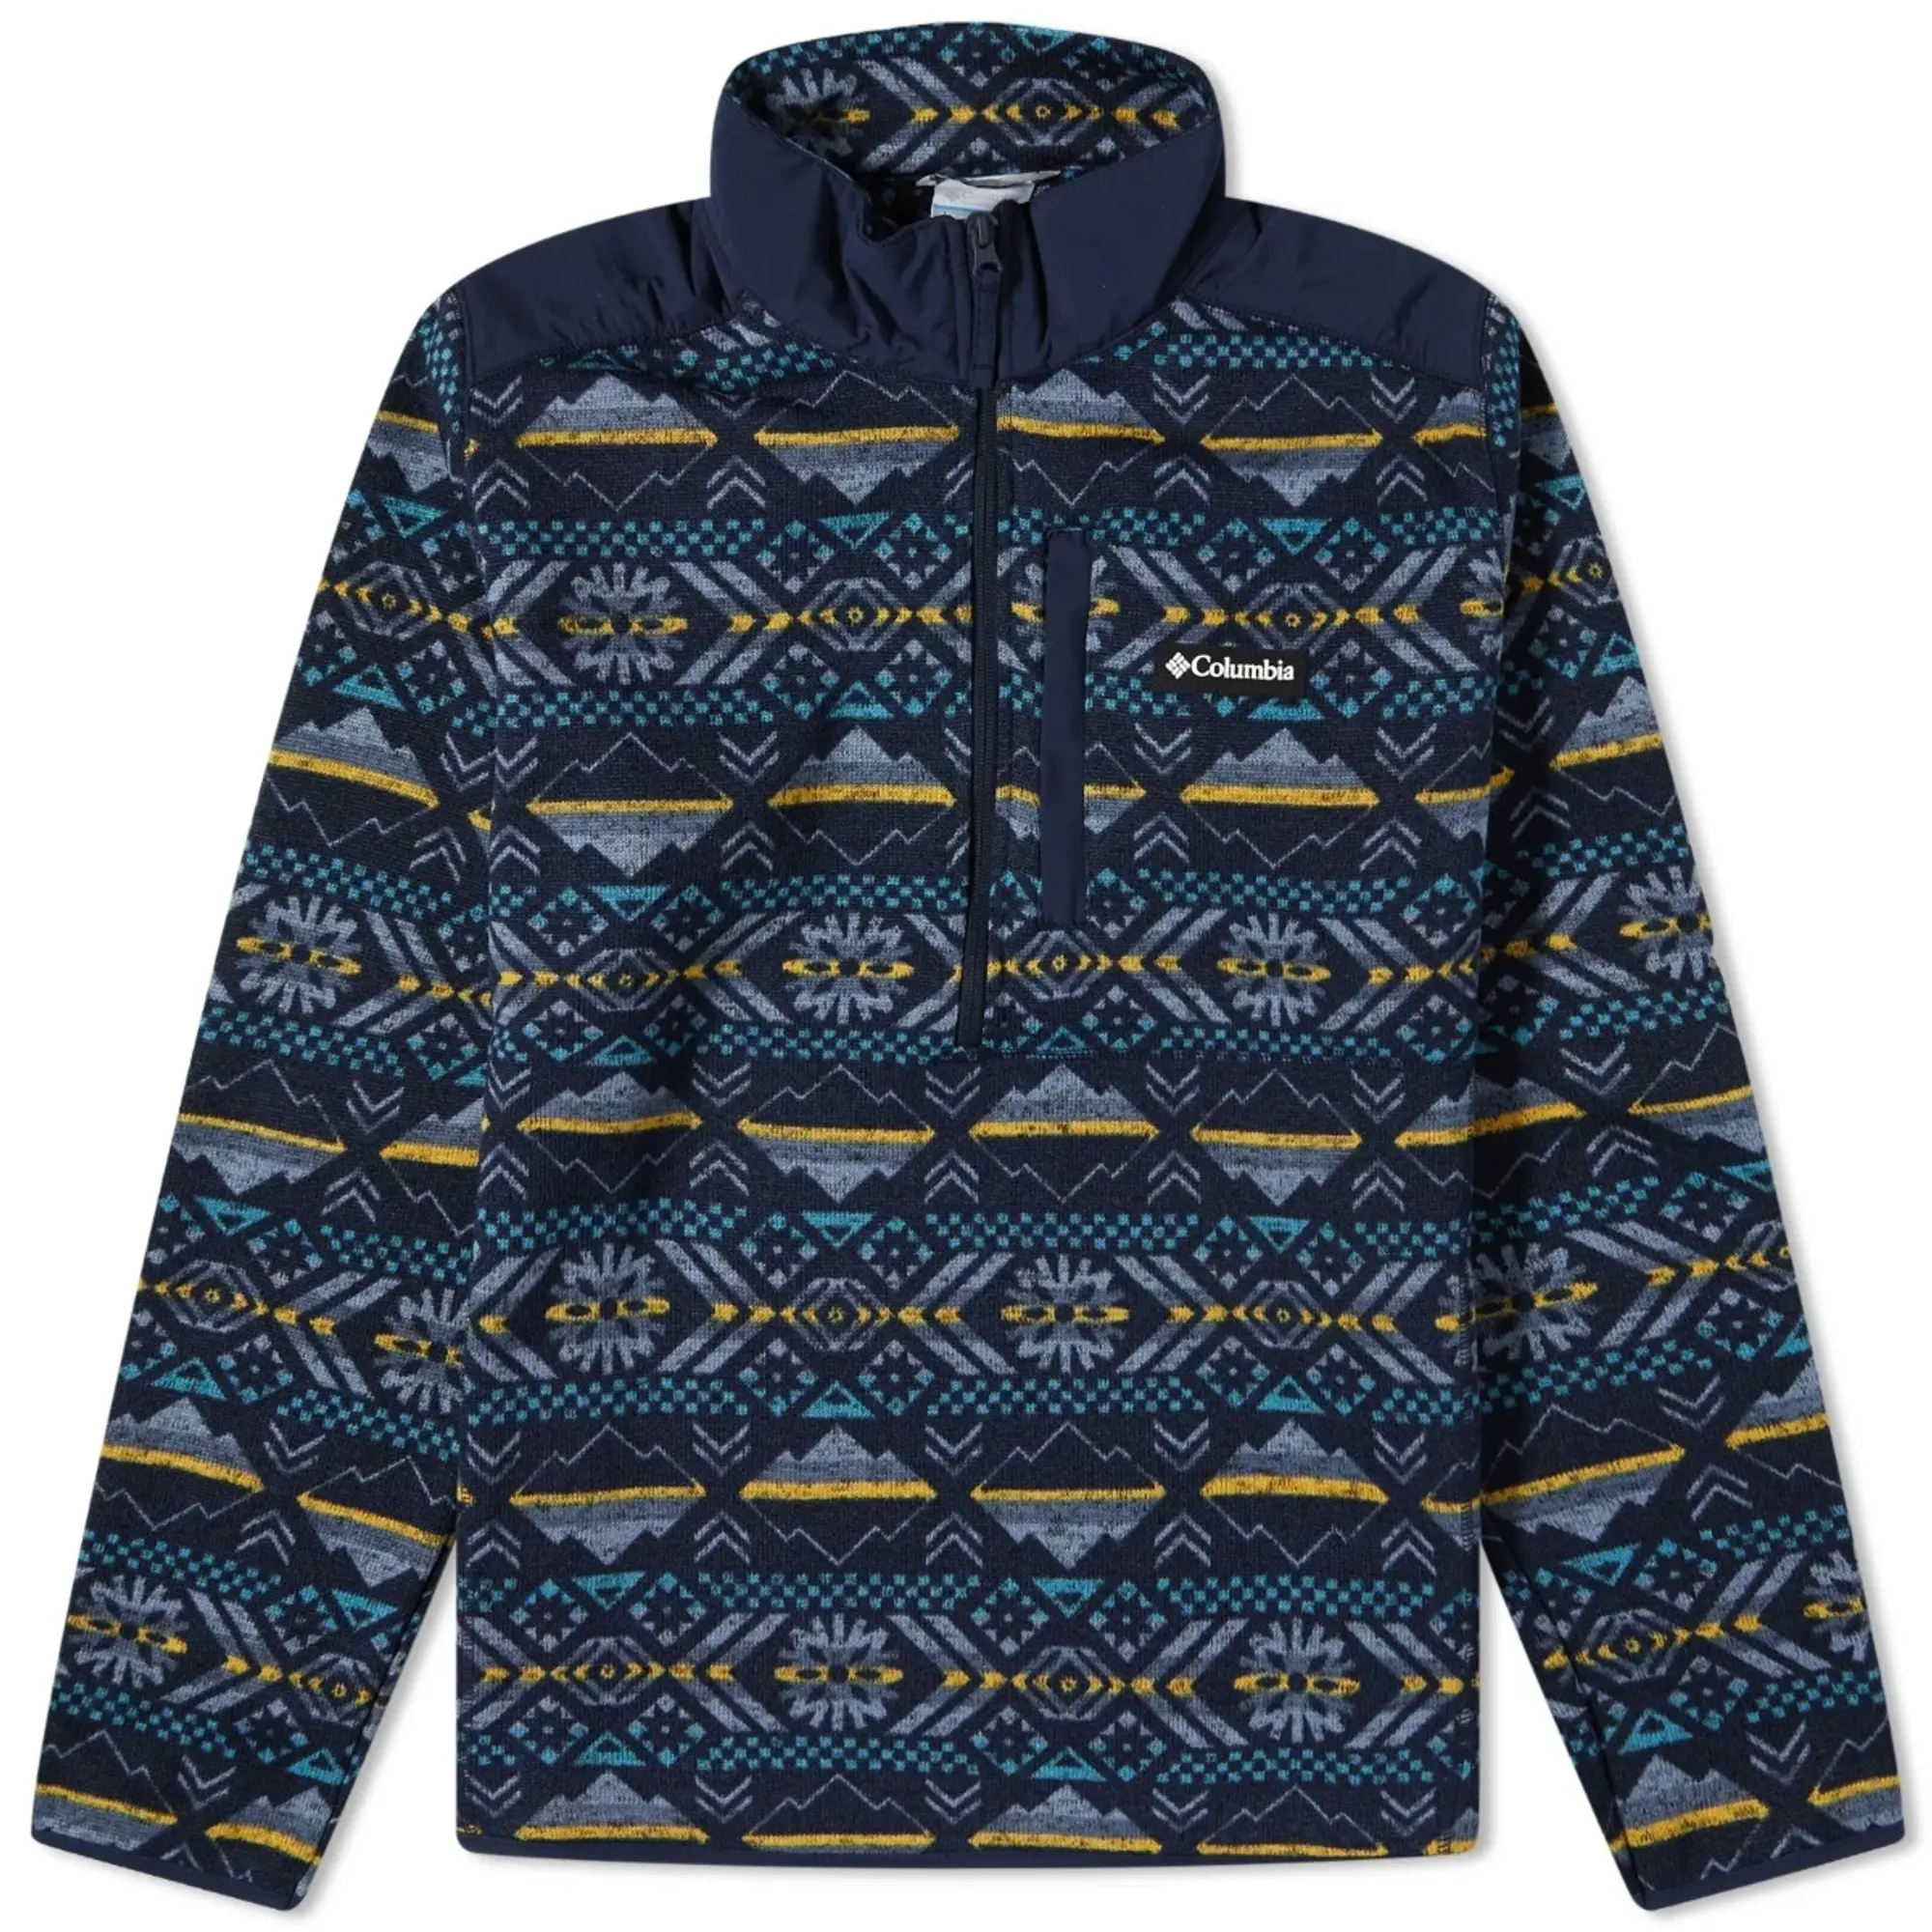 Columbia Men's Sweater Weather™ II Printed Half Zip Fleece Collegiate Navy  Checkered Peaks Print, 201346-465